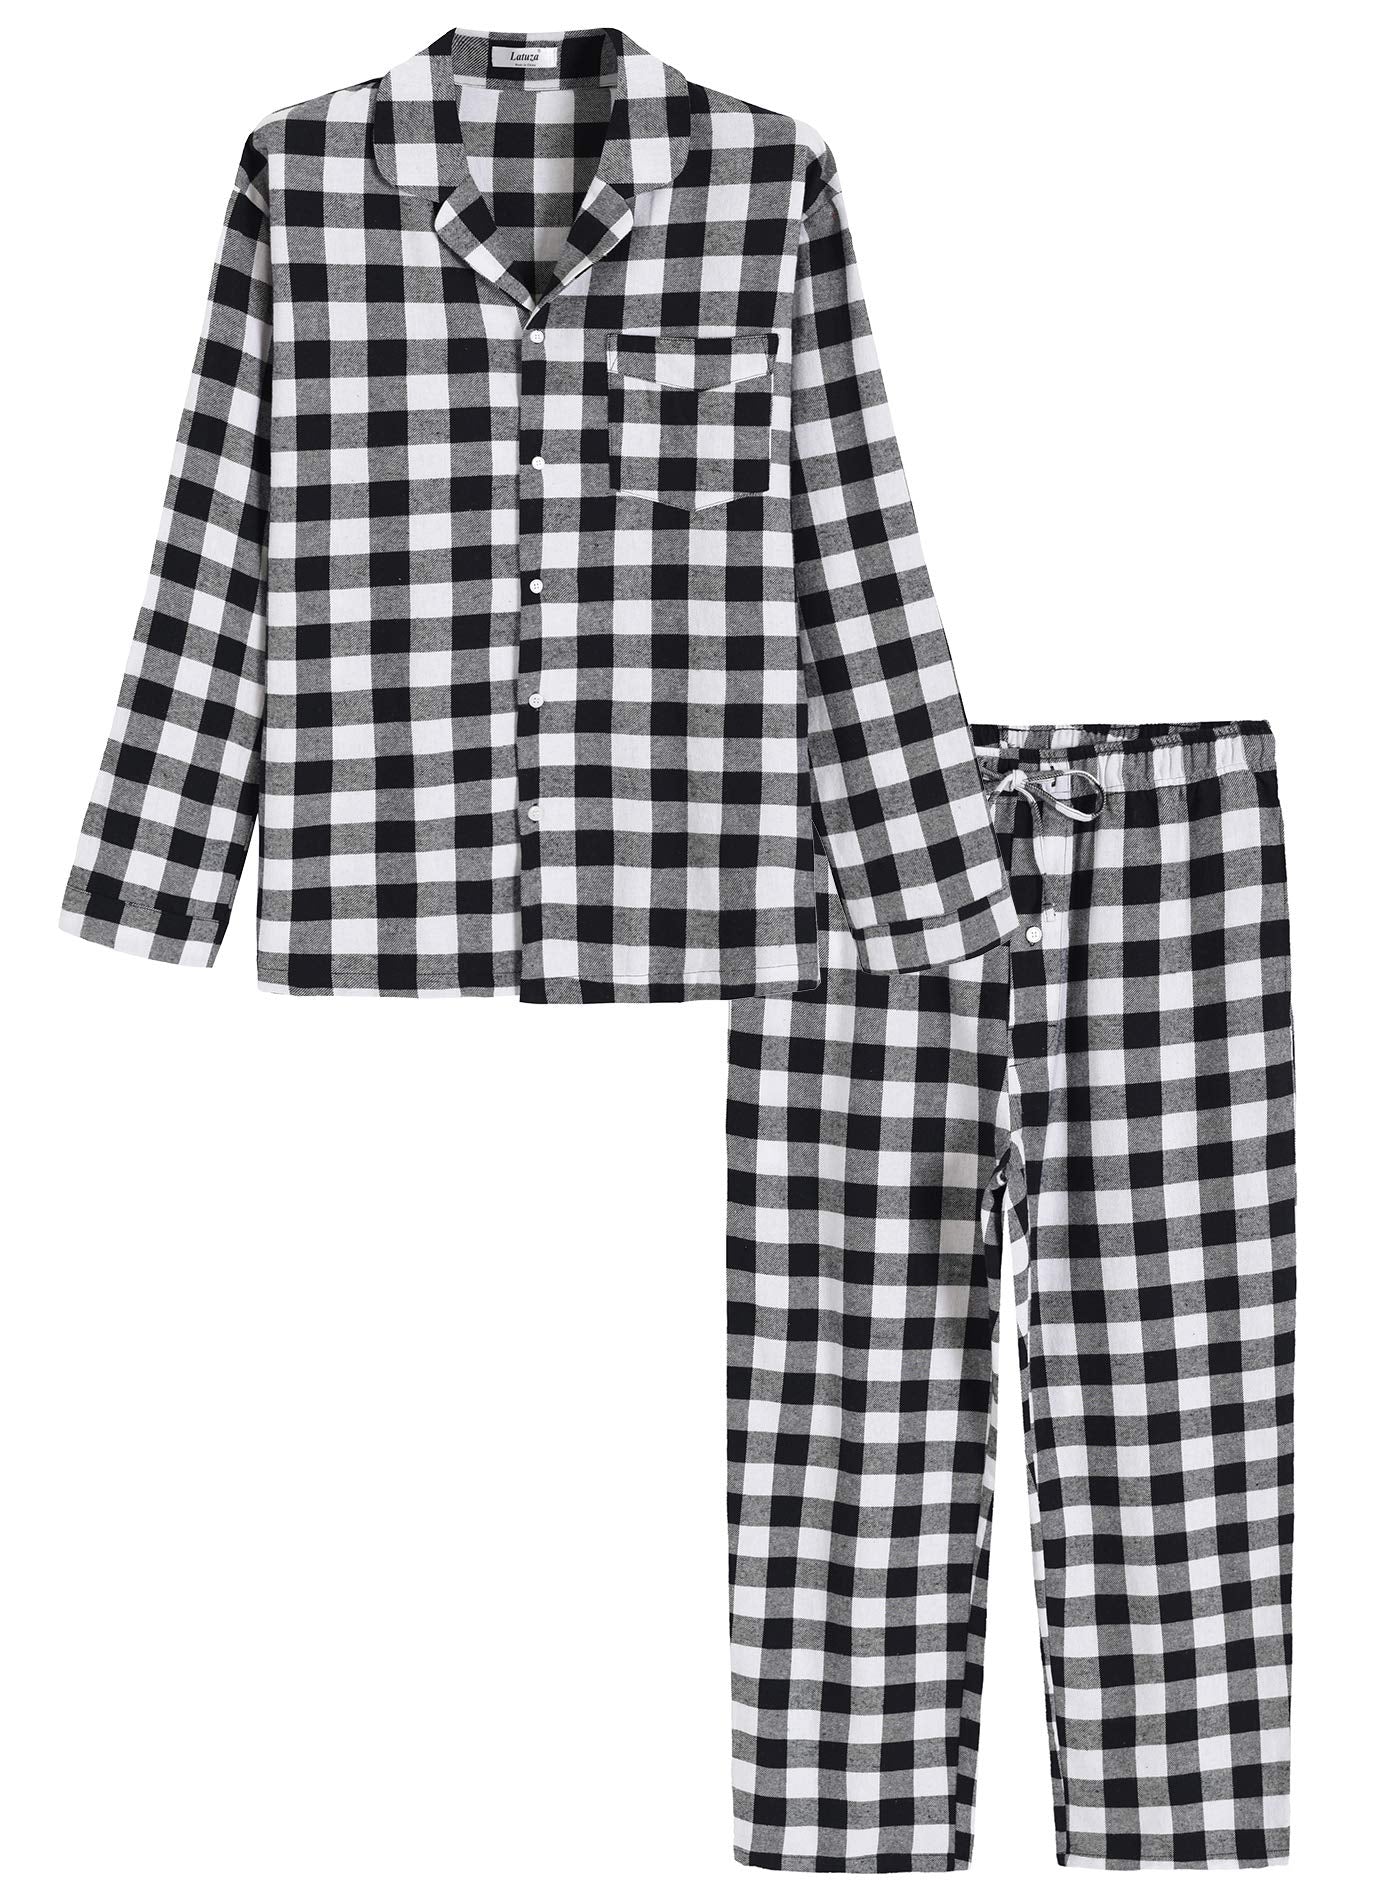 Latuza Men's Cotton Woven Short Sleepwear Pajama Set